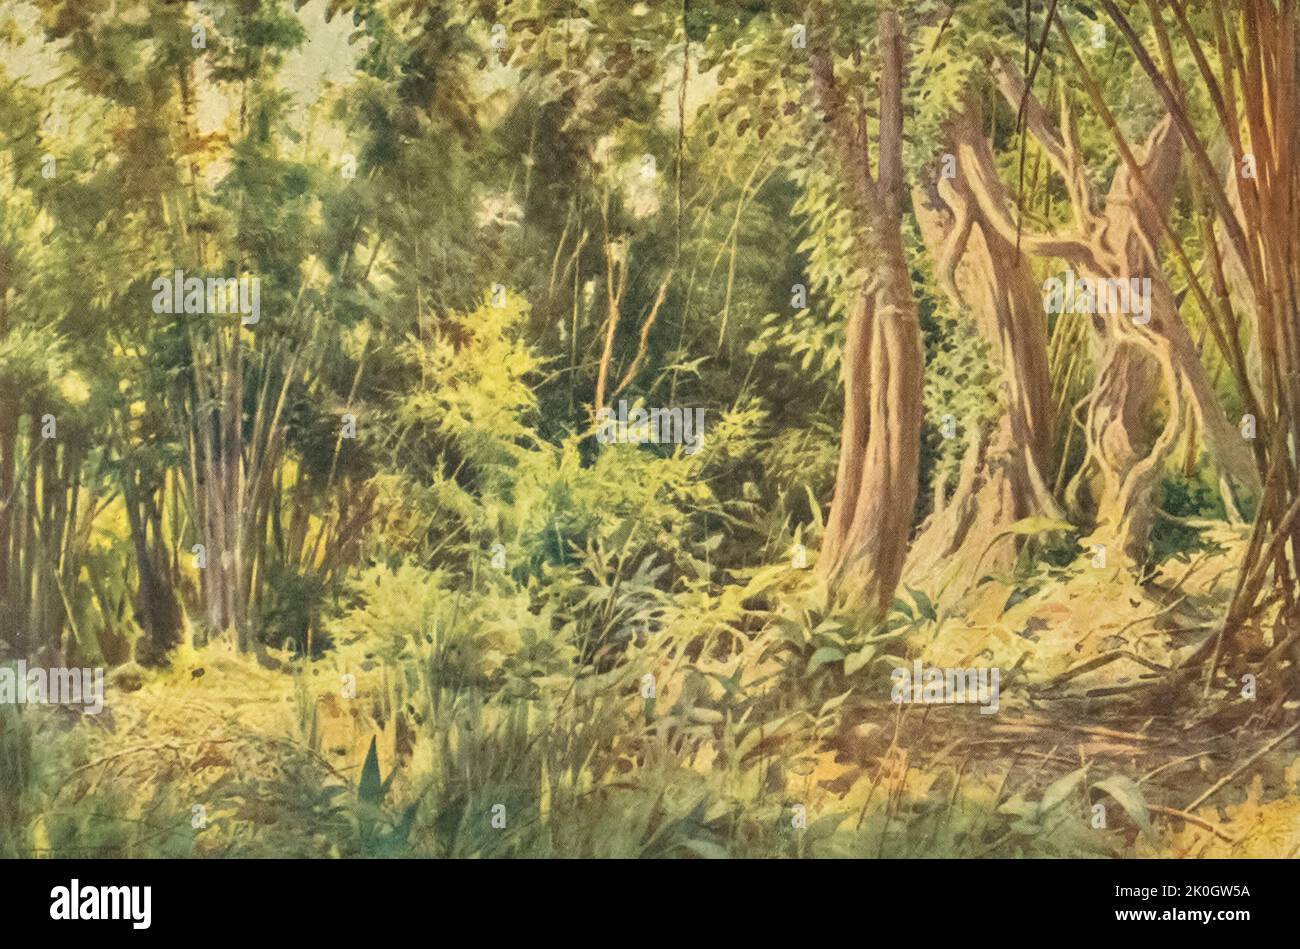 Jungle at Delanchoon aus dem Buch "Burma", gemalt und beschrieben von Kelly, R. Talbot (Robert Talbot), 1861-1934 Erscheinungsdatum 1905 Verlag London : Adam and Charles Black Stockfoto